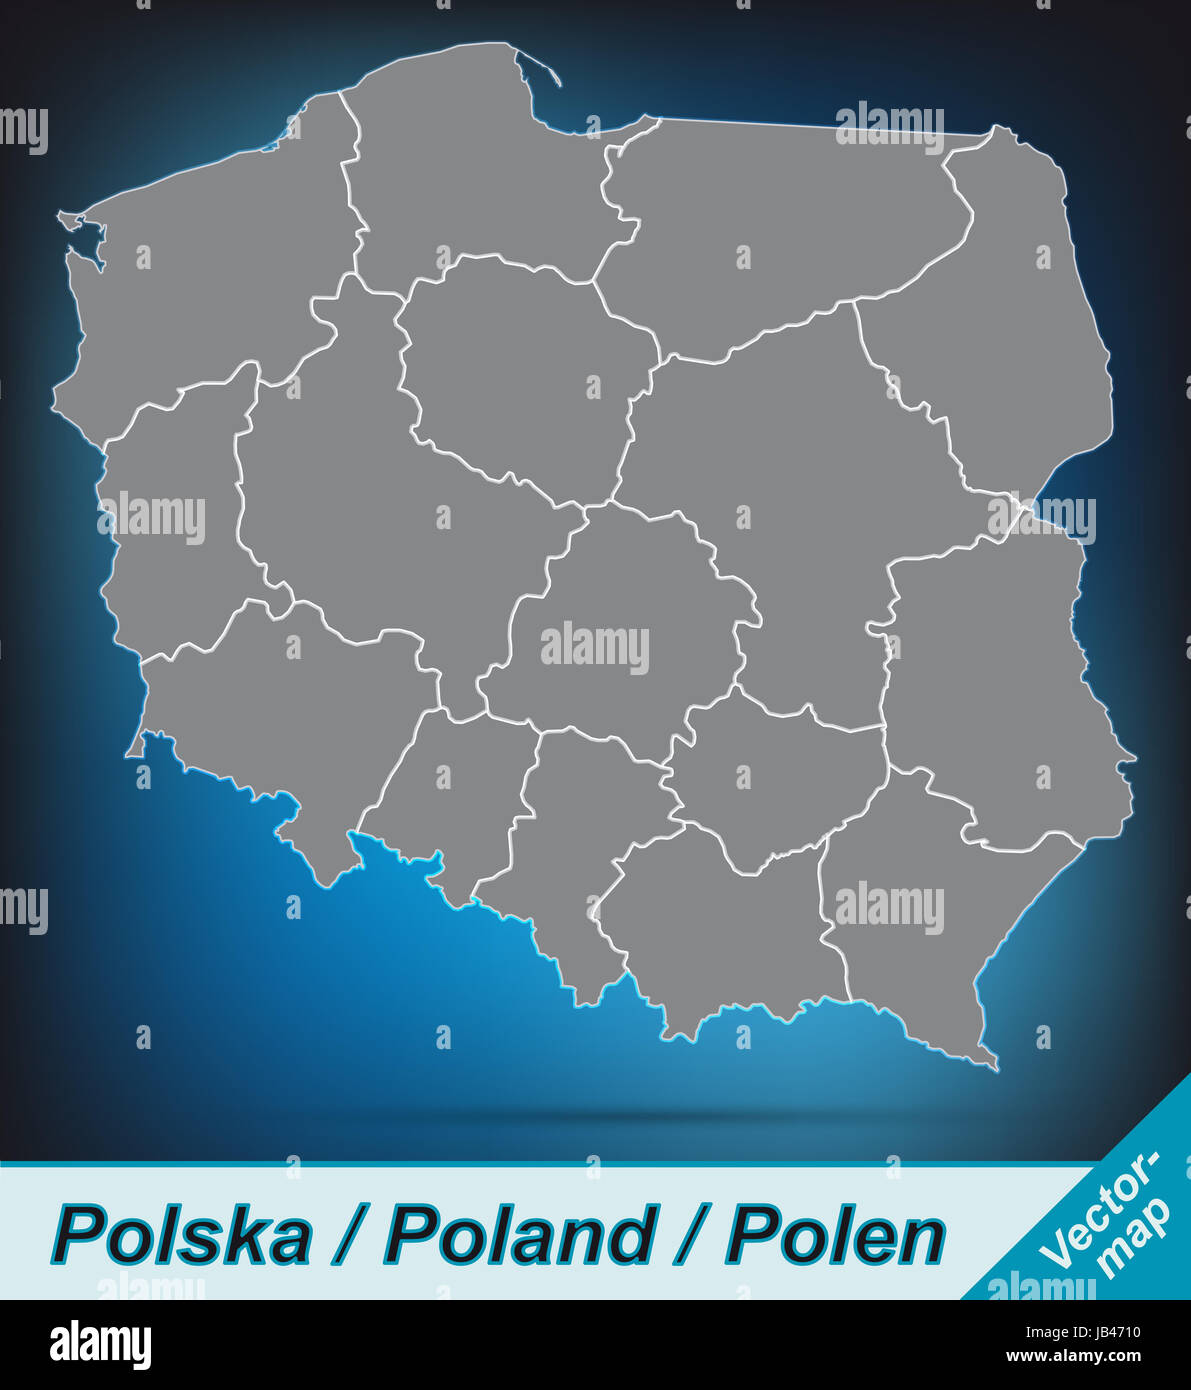 Polen in Europa als Grenzkarte mit Grenzen  Durch die ansprechende Gestaltung fügt sich die Karte perfekt in Ihr Vorhaben ein. Stock Photo